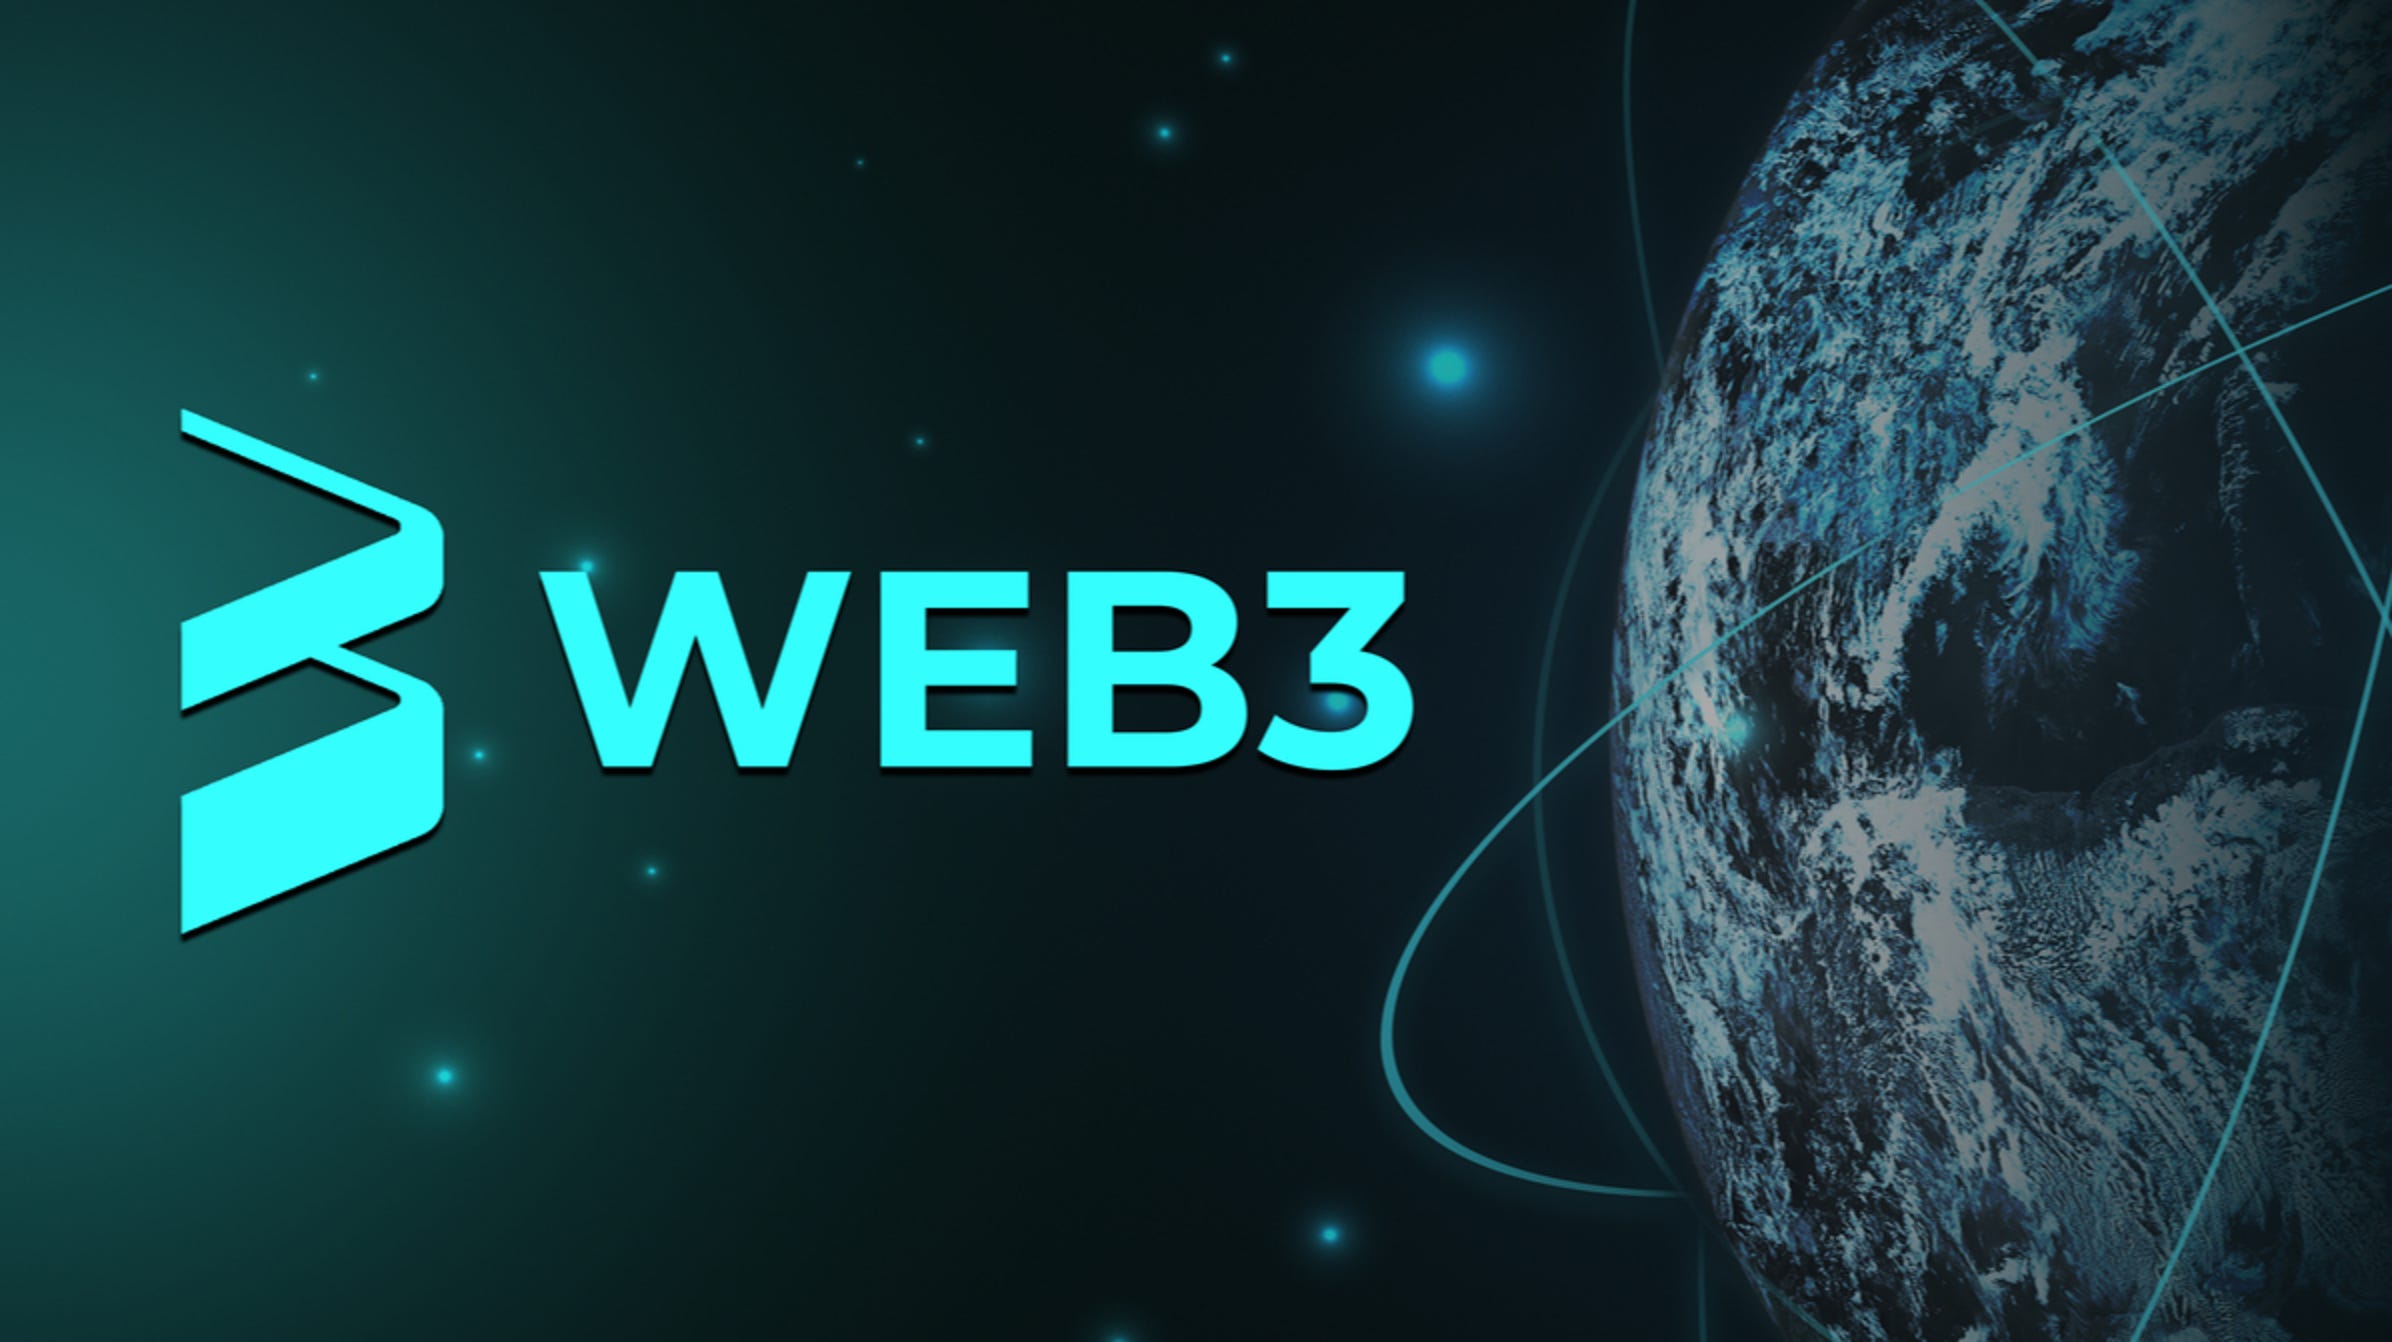 Web3 Kresus raises $25M for consumer blockchain access